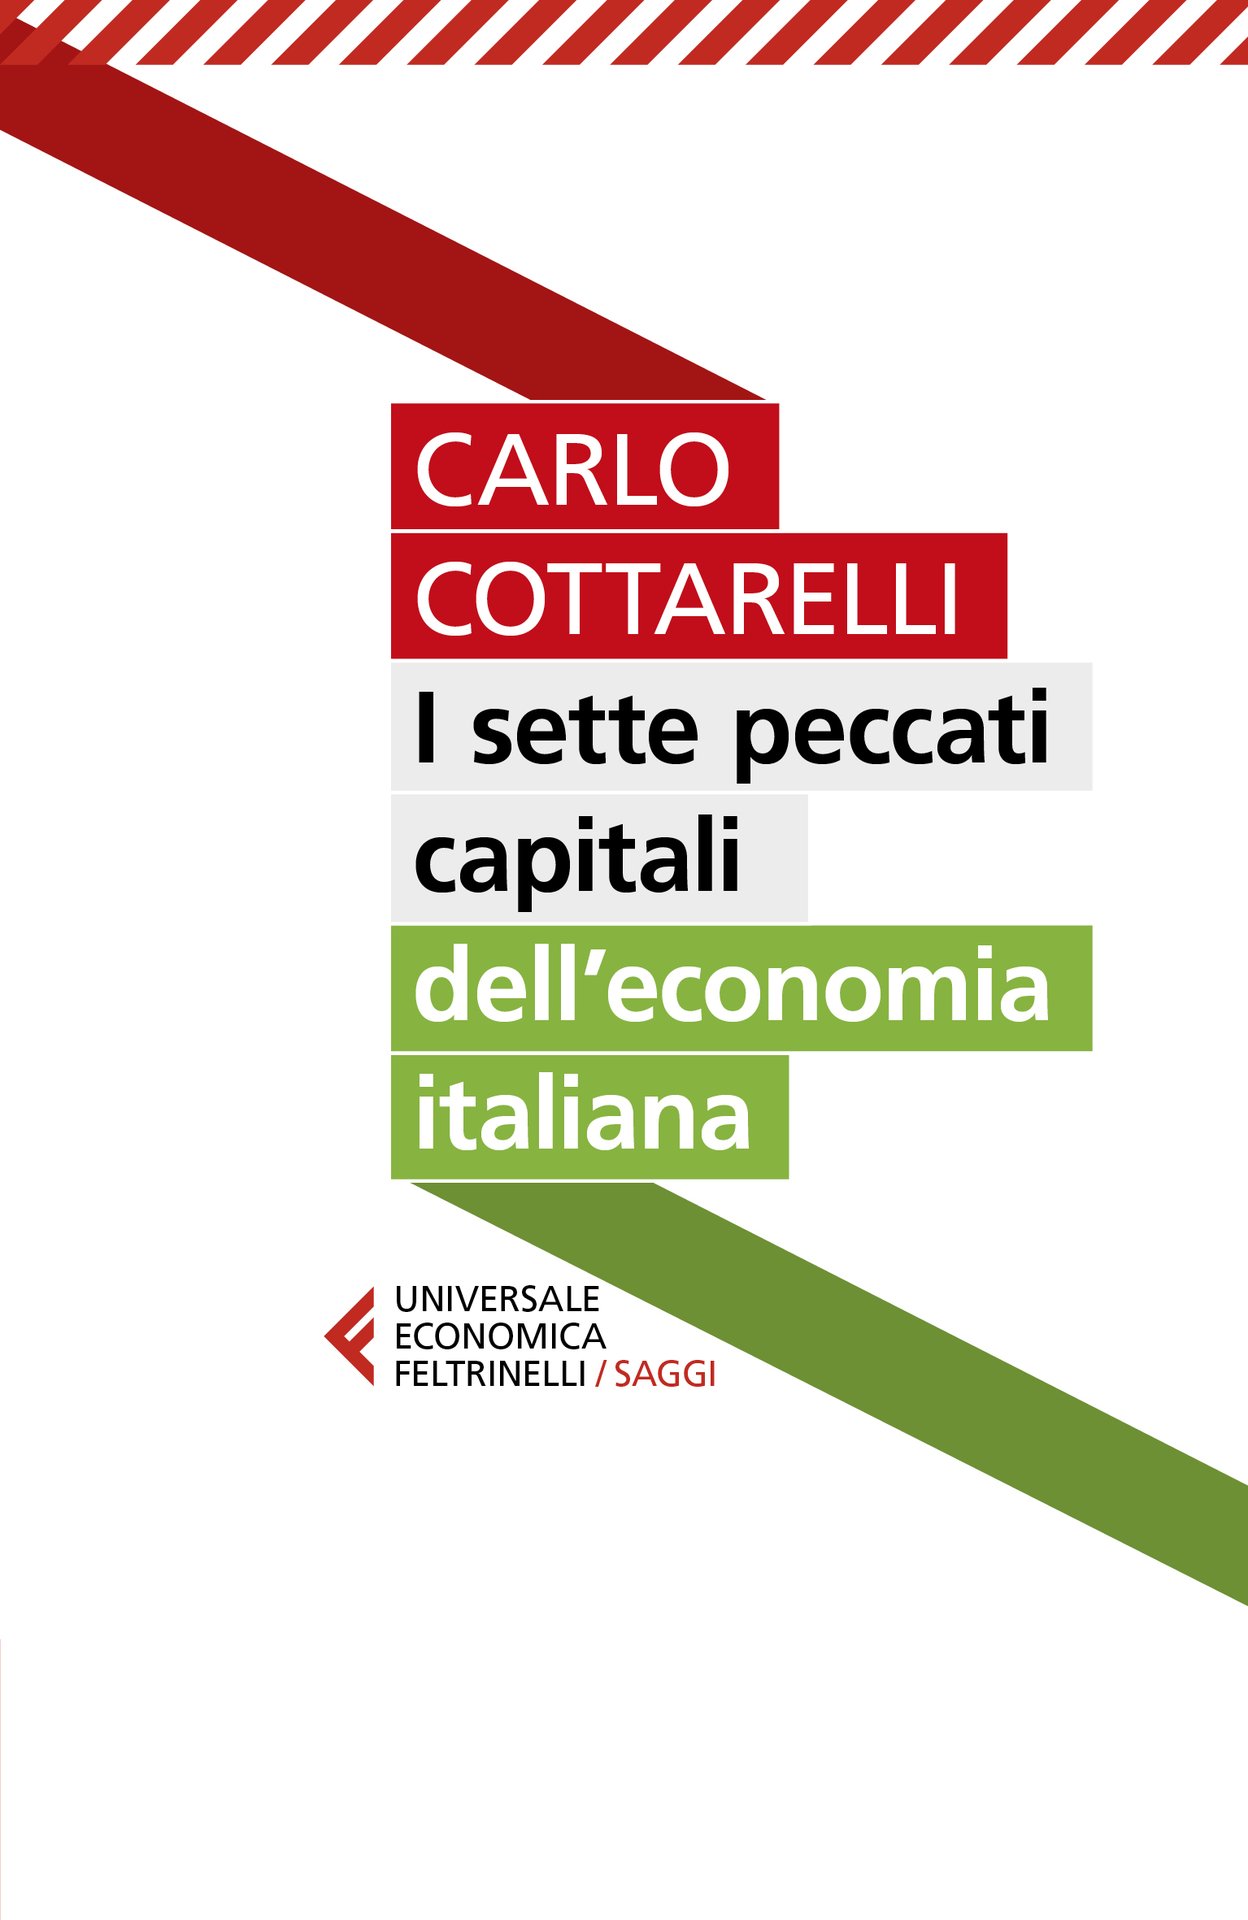 Carlo Cottarelli in finale per il Il Premio Letterario Caccuri